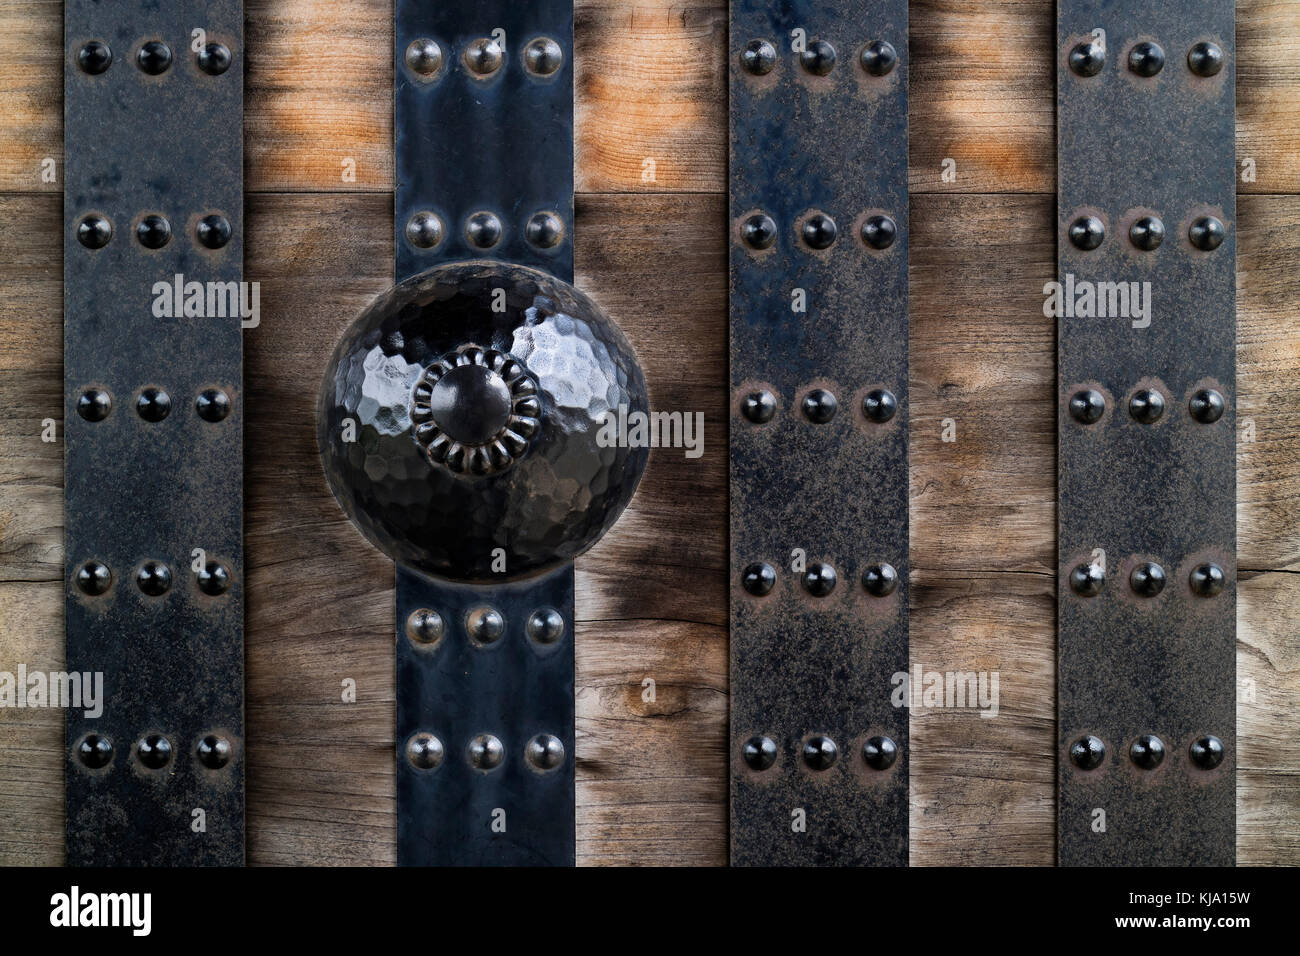 Tiras de metal y adornos en una antigua puerta de madera desgastada Foto de stock